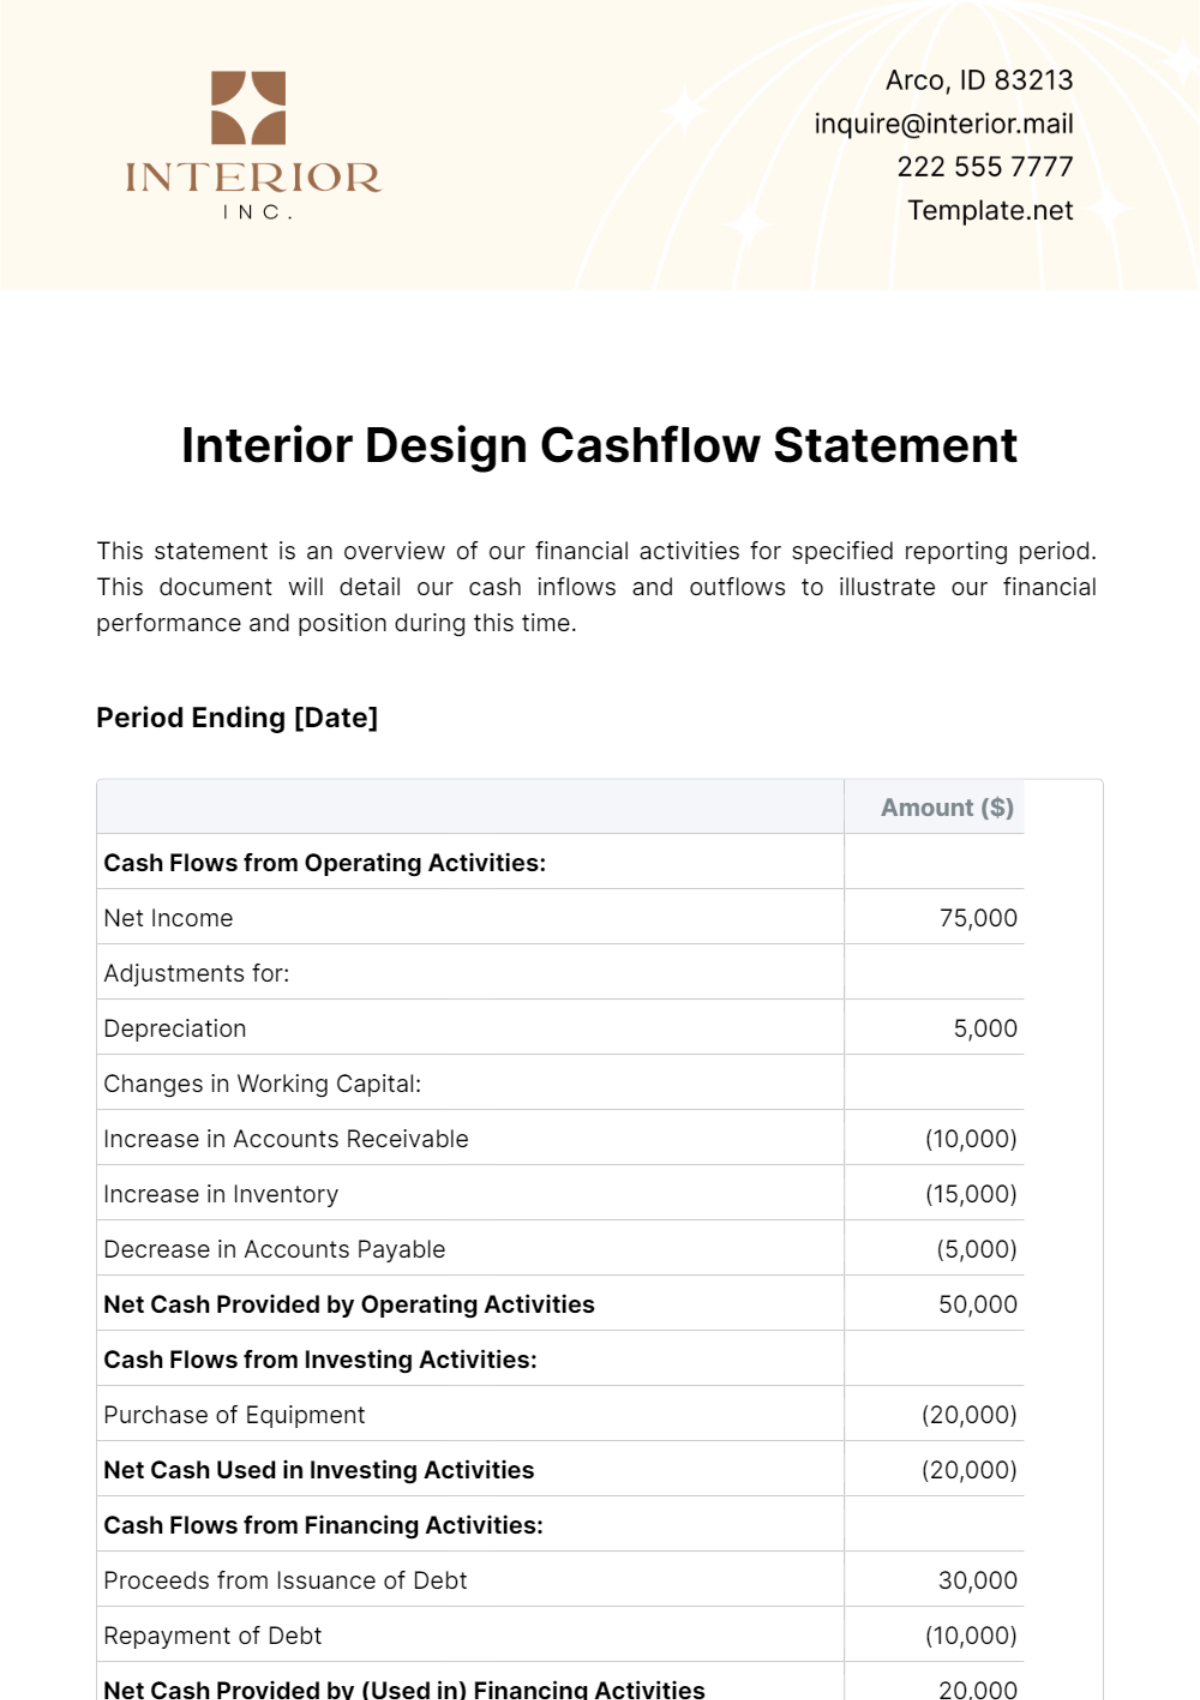 Free Interior Design Cashflow Statement Template